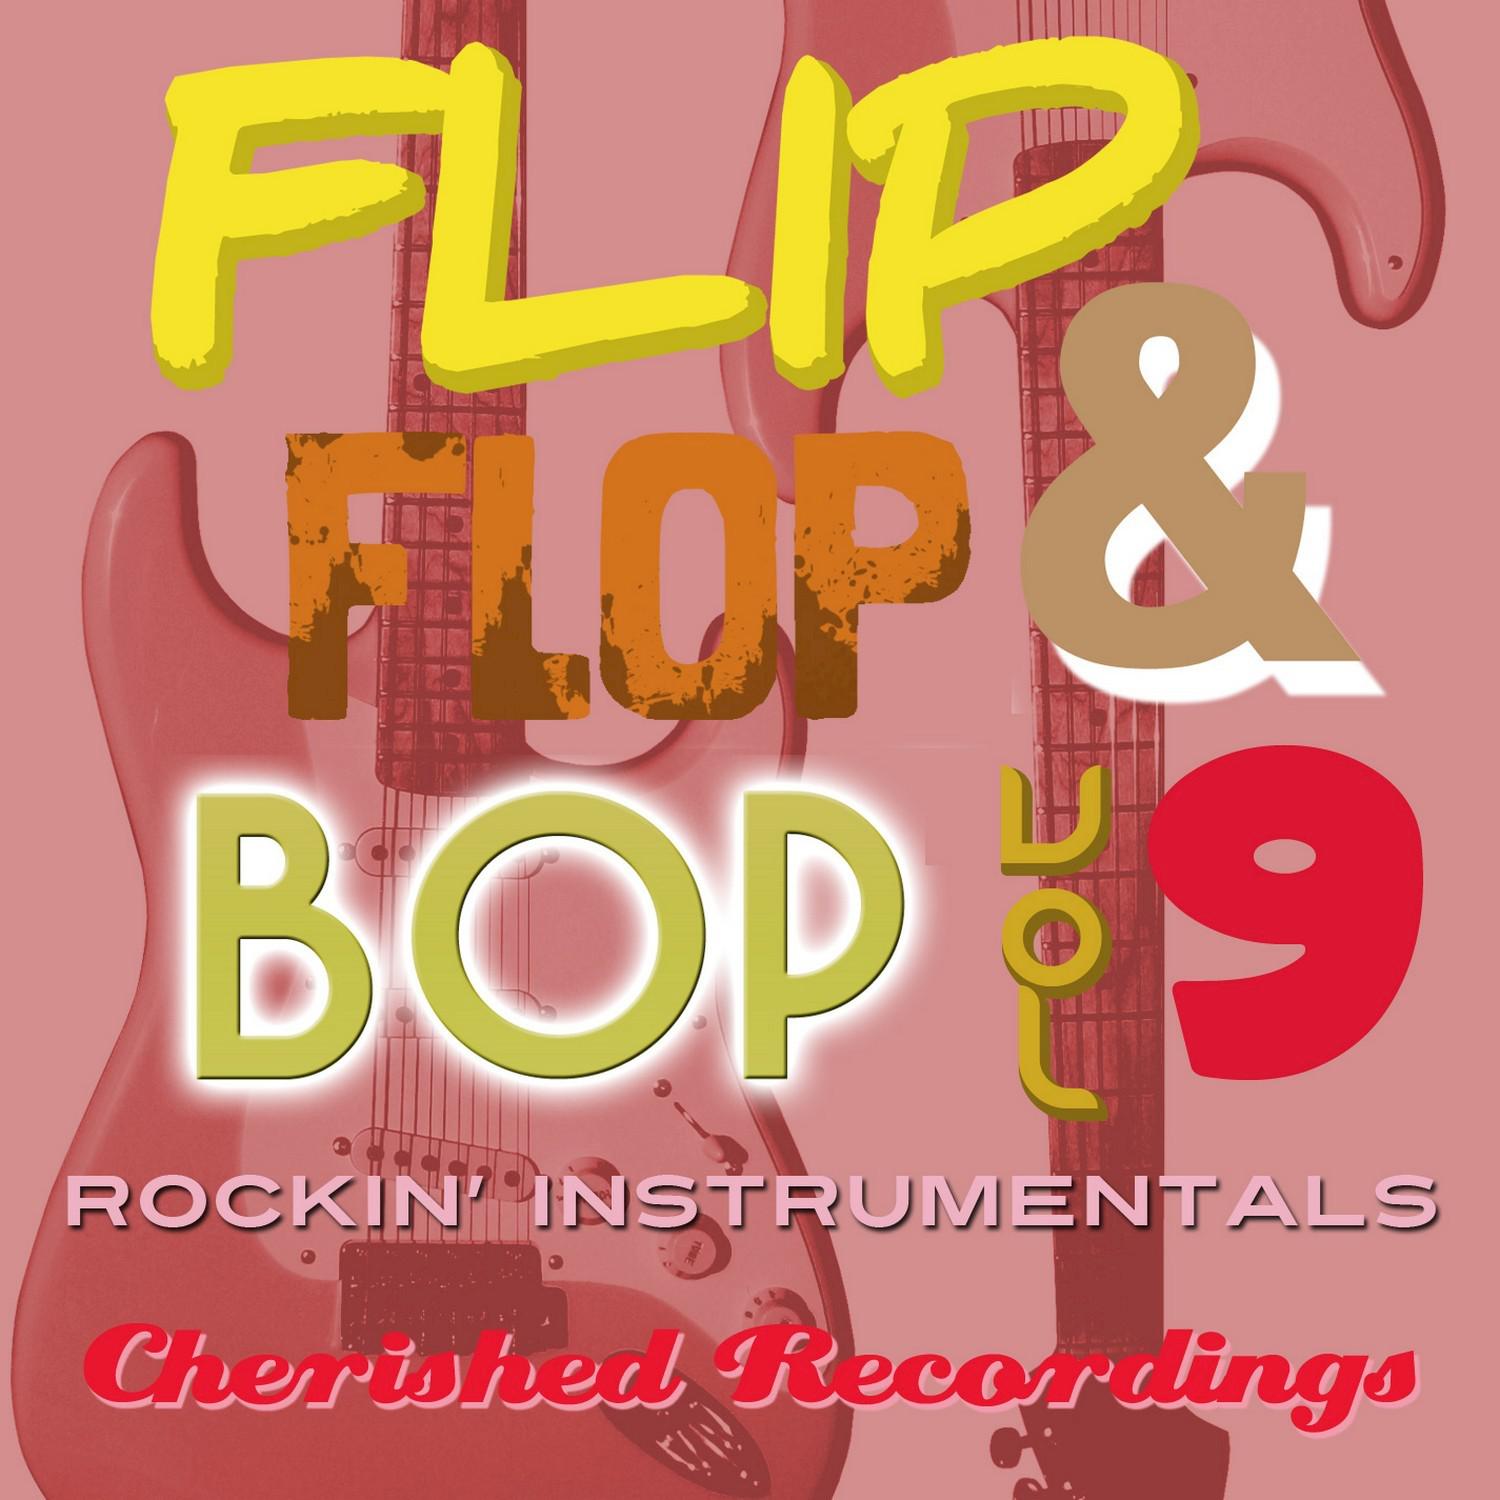 Flip Flop and Bop, Vol. 9